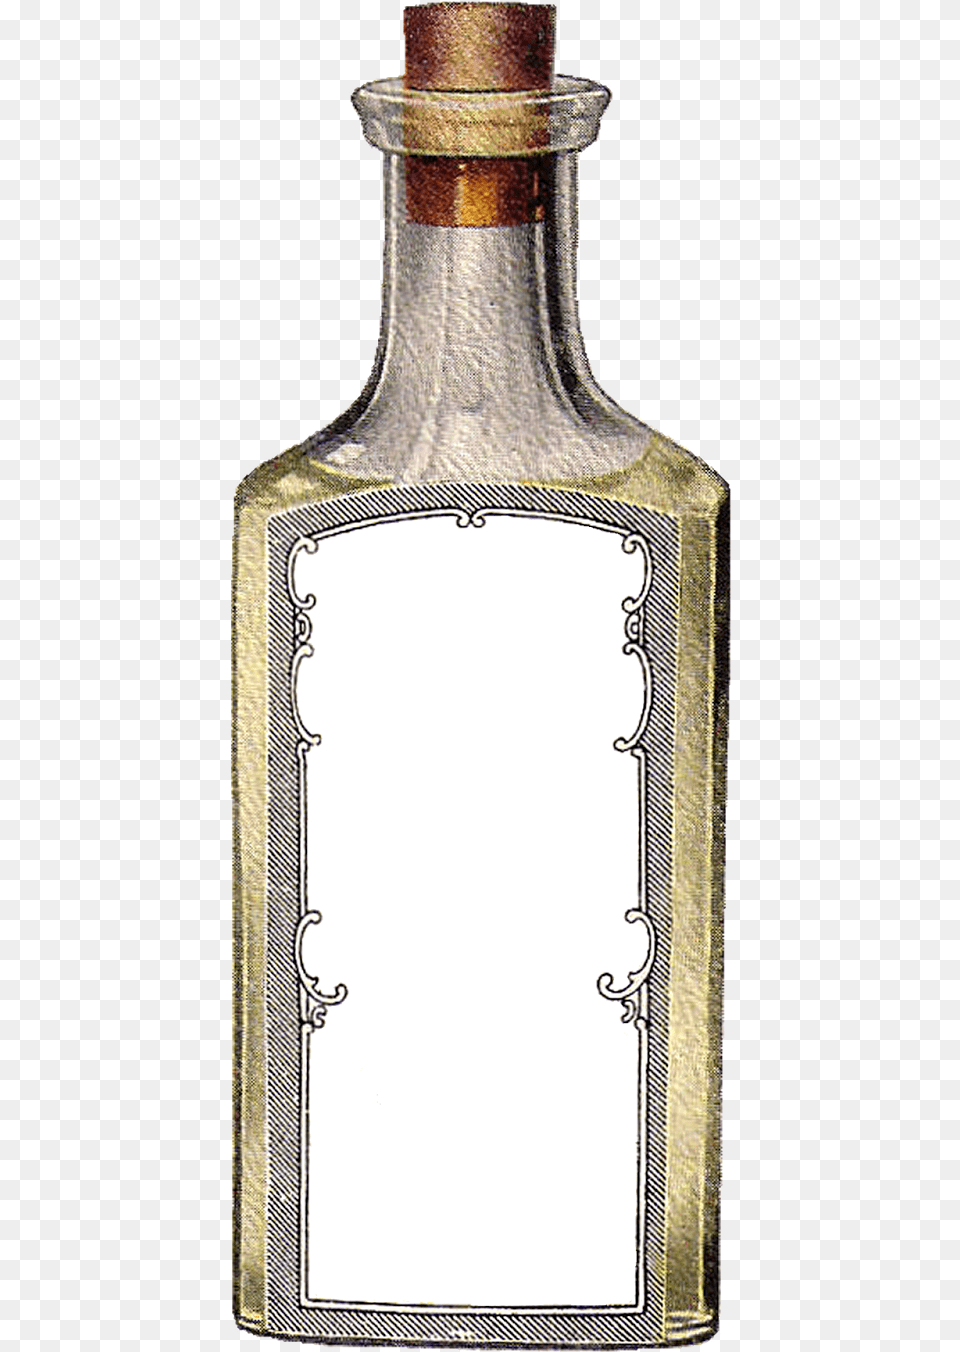 Digital Blank Label Downloadspng Glass Bottle Vintage Label, Adult, Bride, Female, Person Png Image